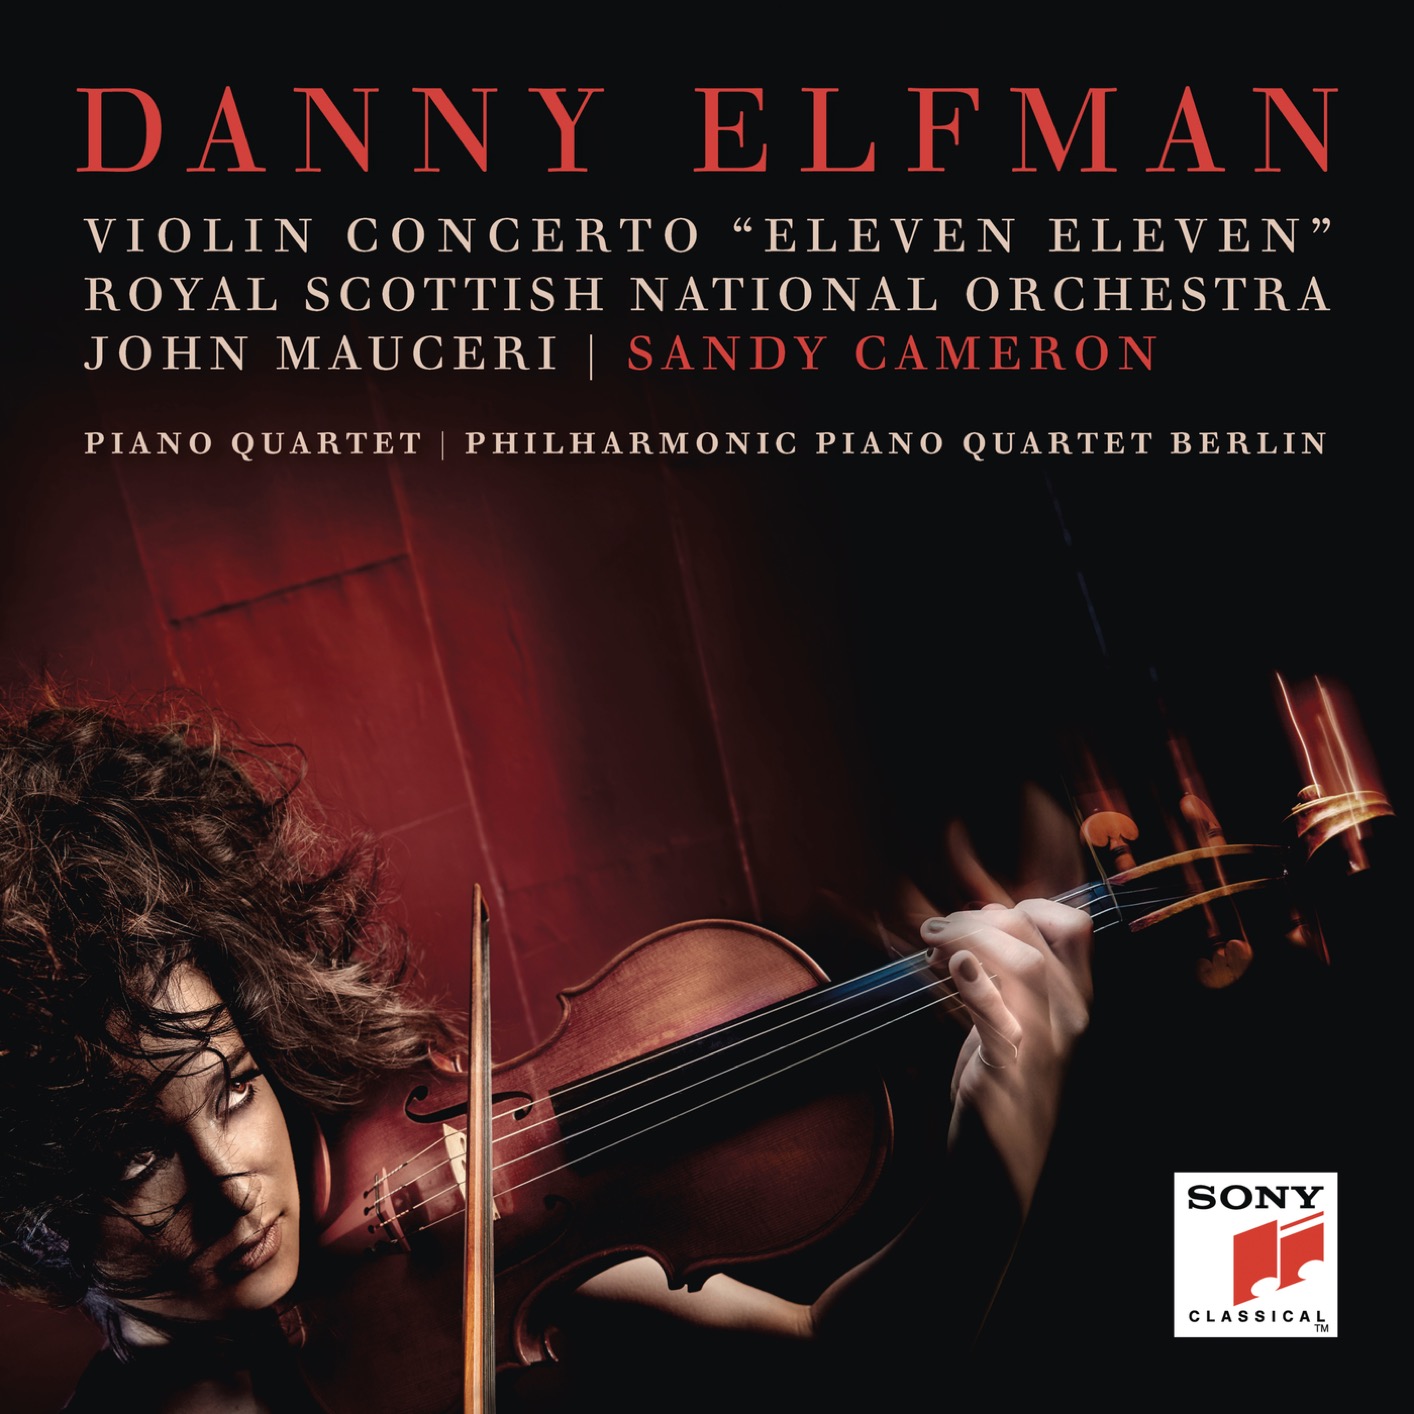 Danny Elfman - Violin Concerto "Eleven Eleven" and Piano Quartet (2019) [FLAC 24bit/48kHz]